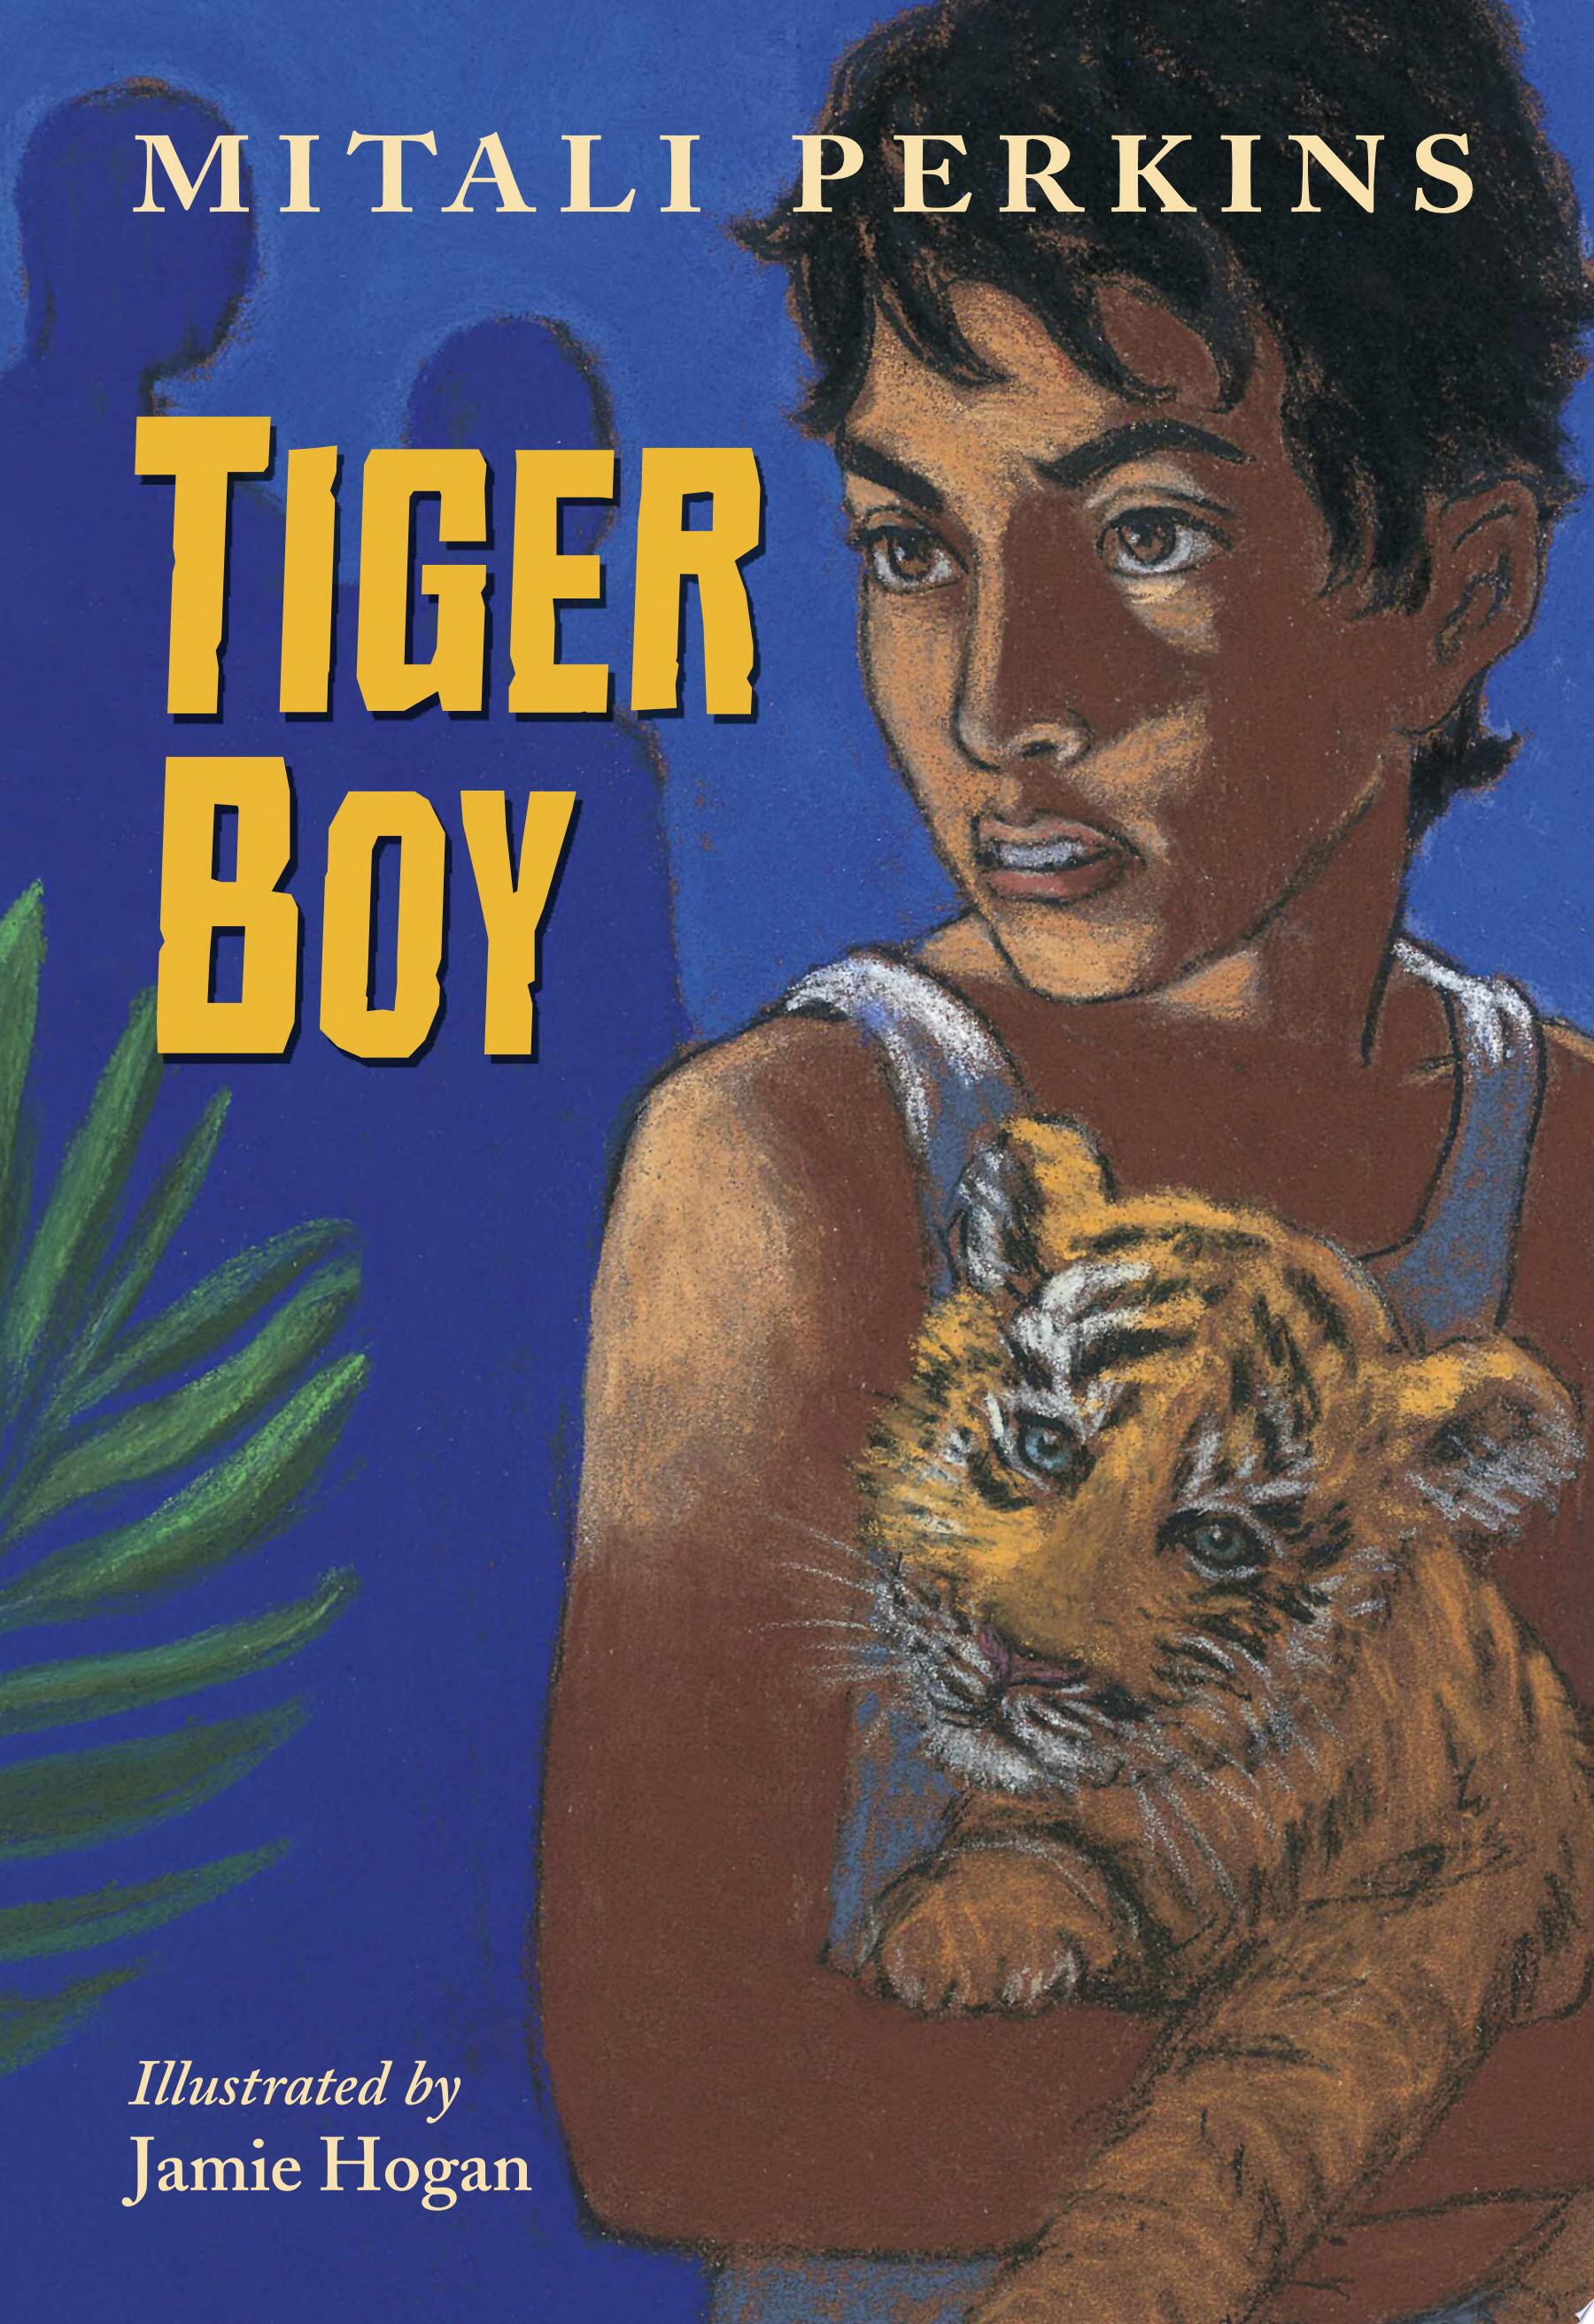 Image for "Tiger Boy"